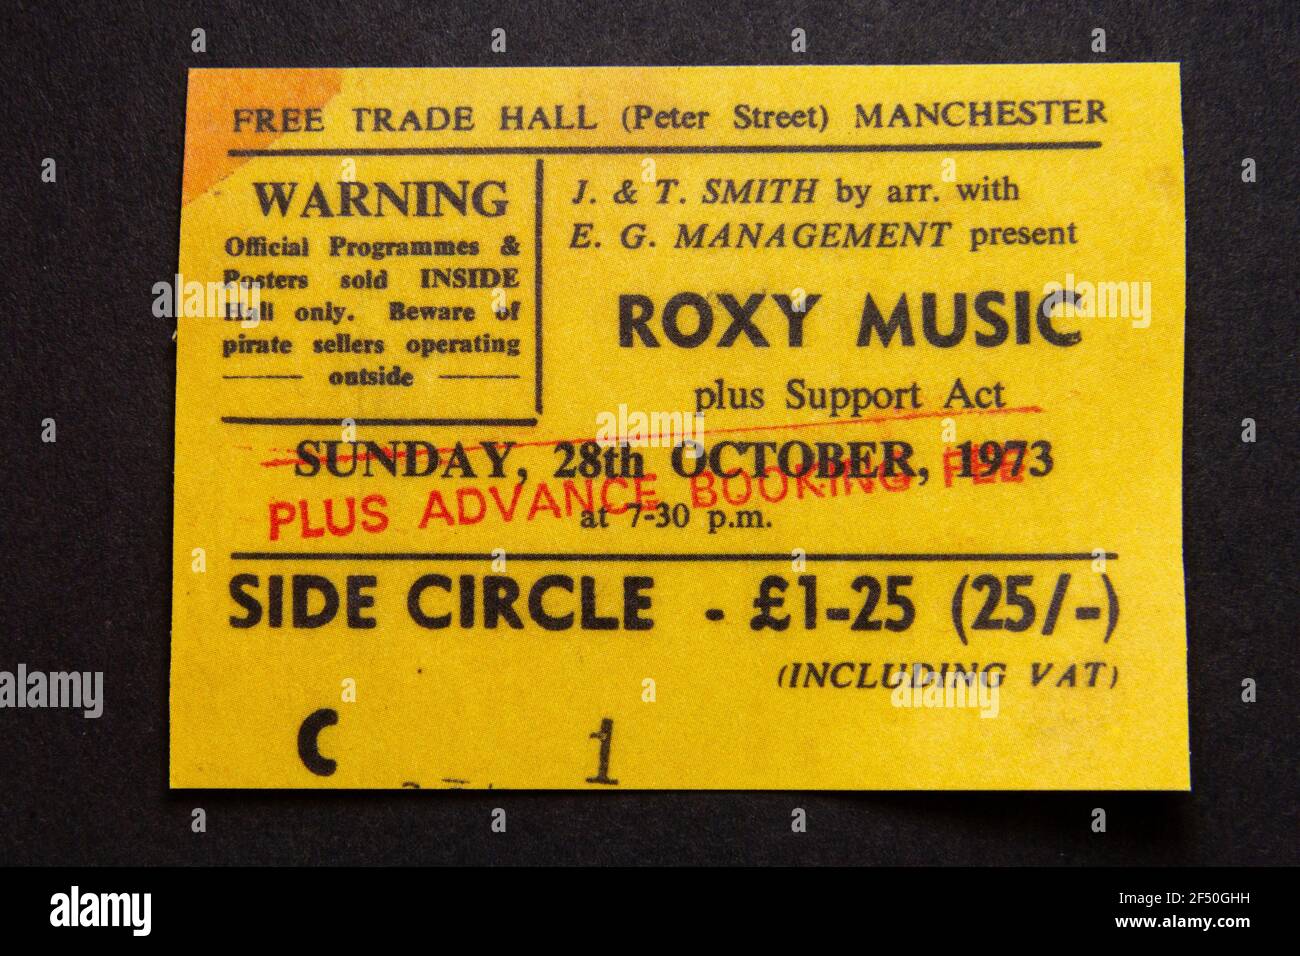 Eine nachgebaute Konzertkarte für Roxy Music in der Free Trade Hall Manchester am 28. Oktober 1973, Teil eines Erinnerungspakets aus den 1970er Jahren. Stockfoto